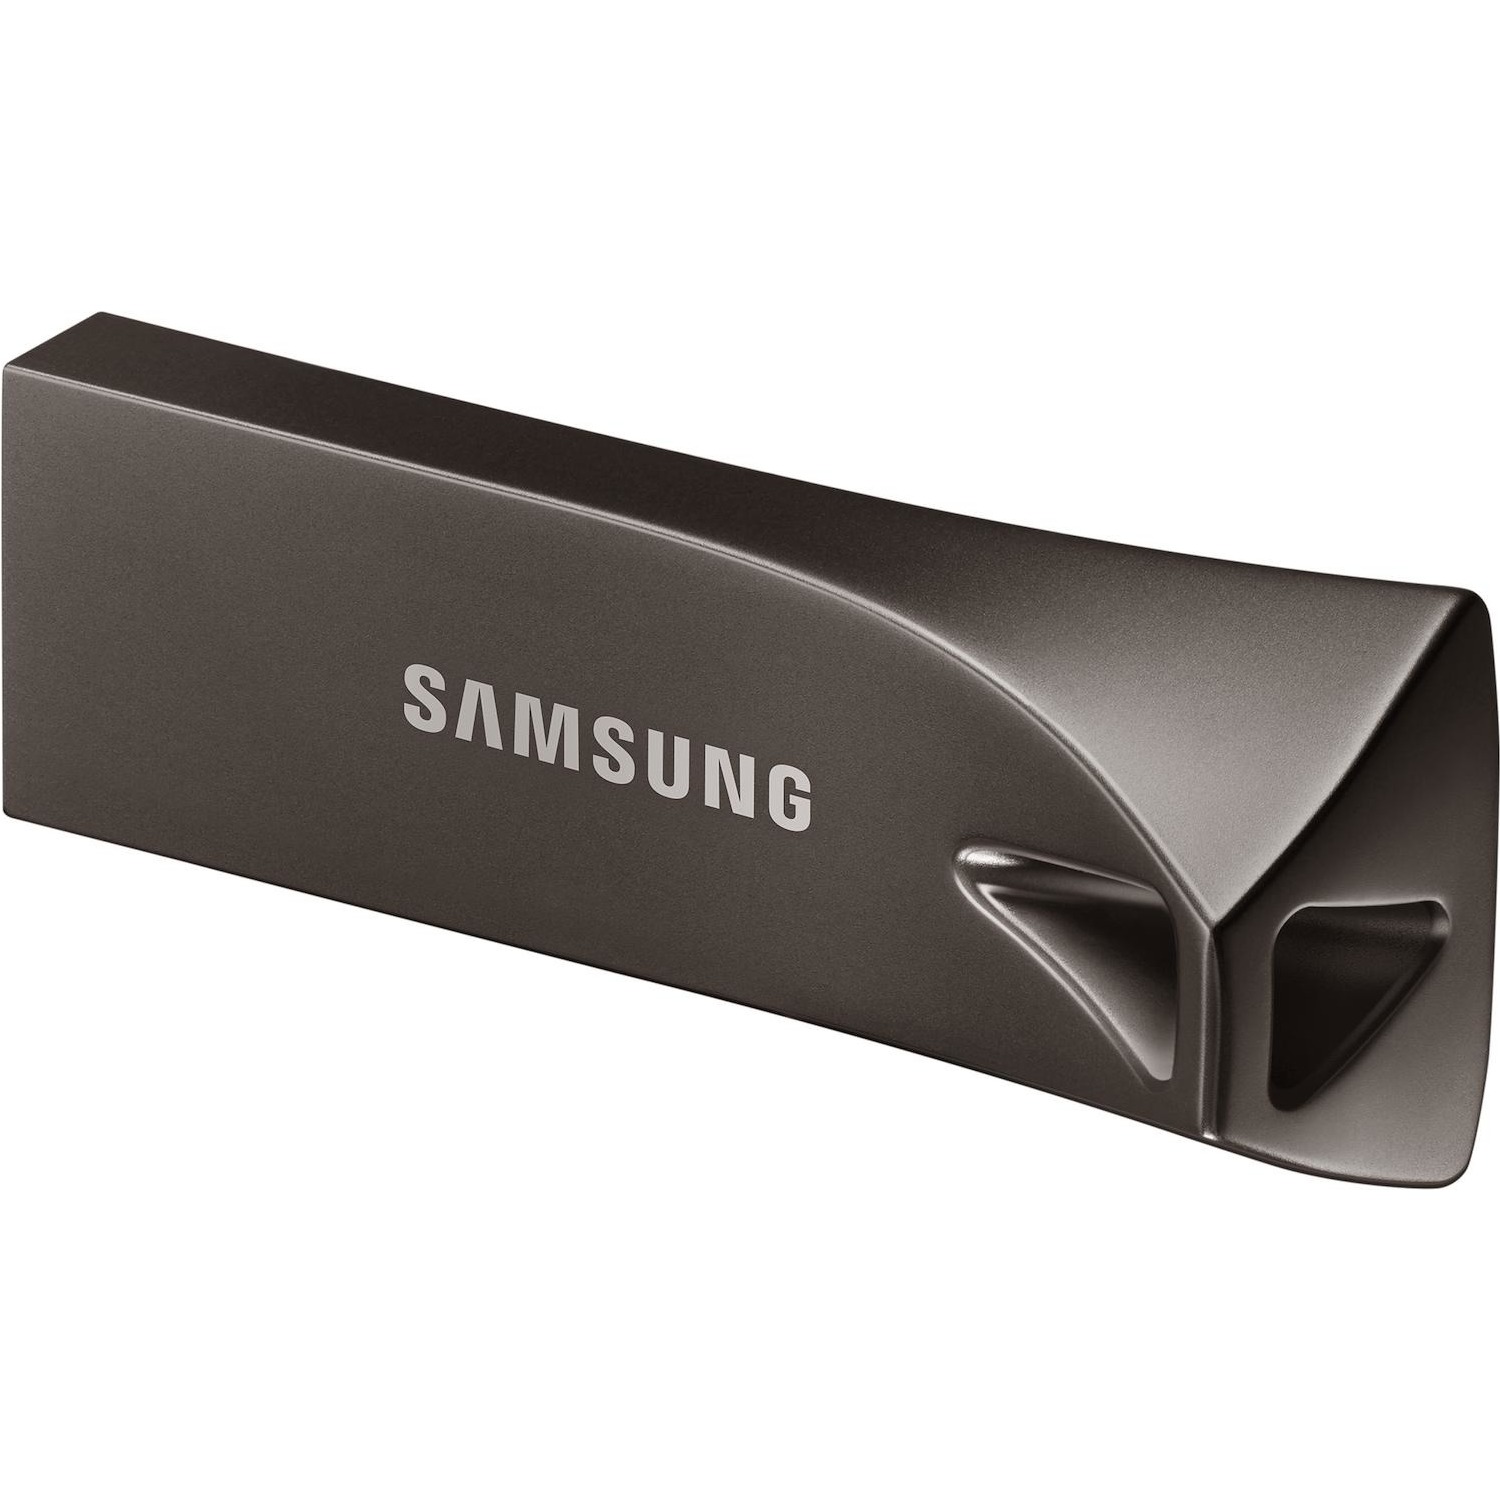 Immagine per Pen drive Samsung 64GB USB 3.1 grafite da DIMOStore